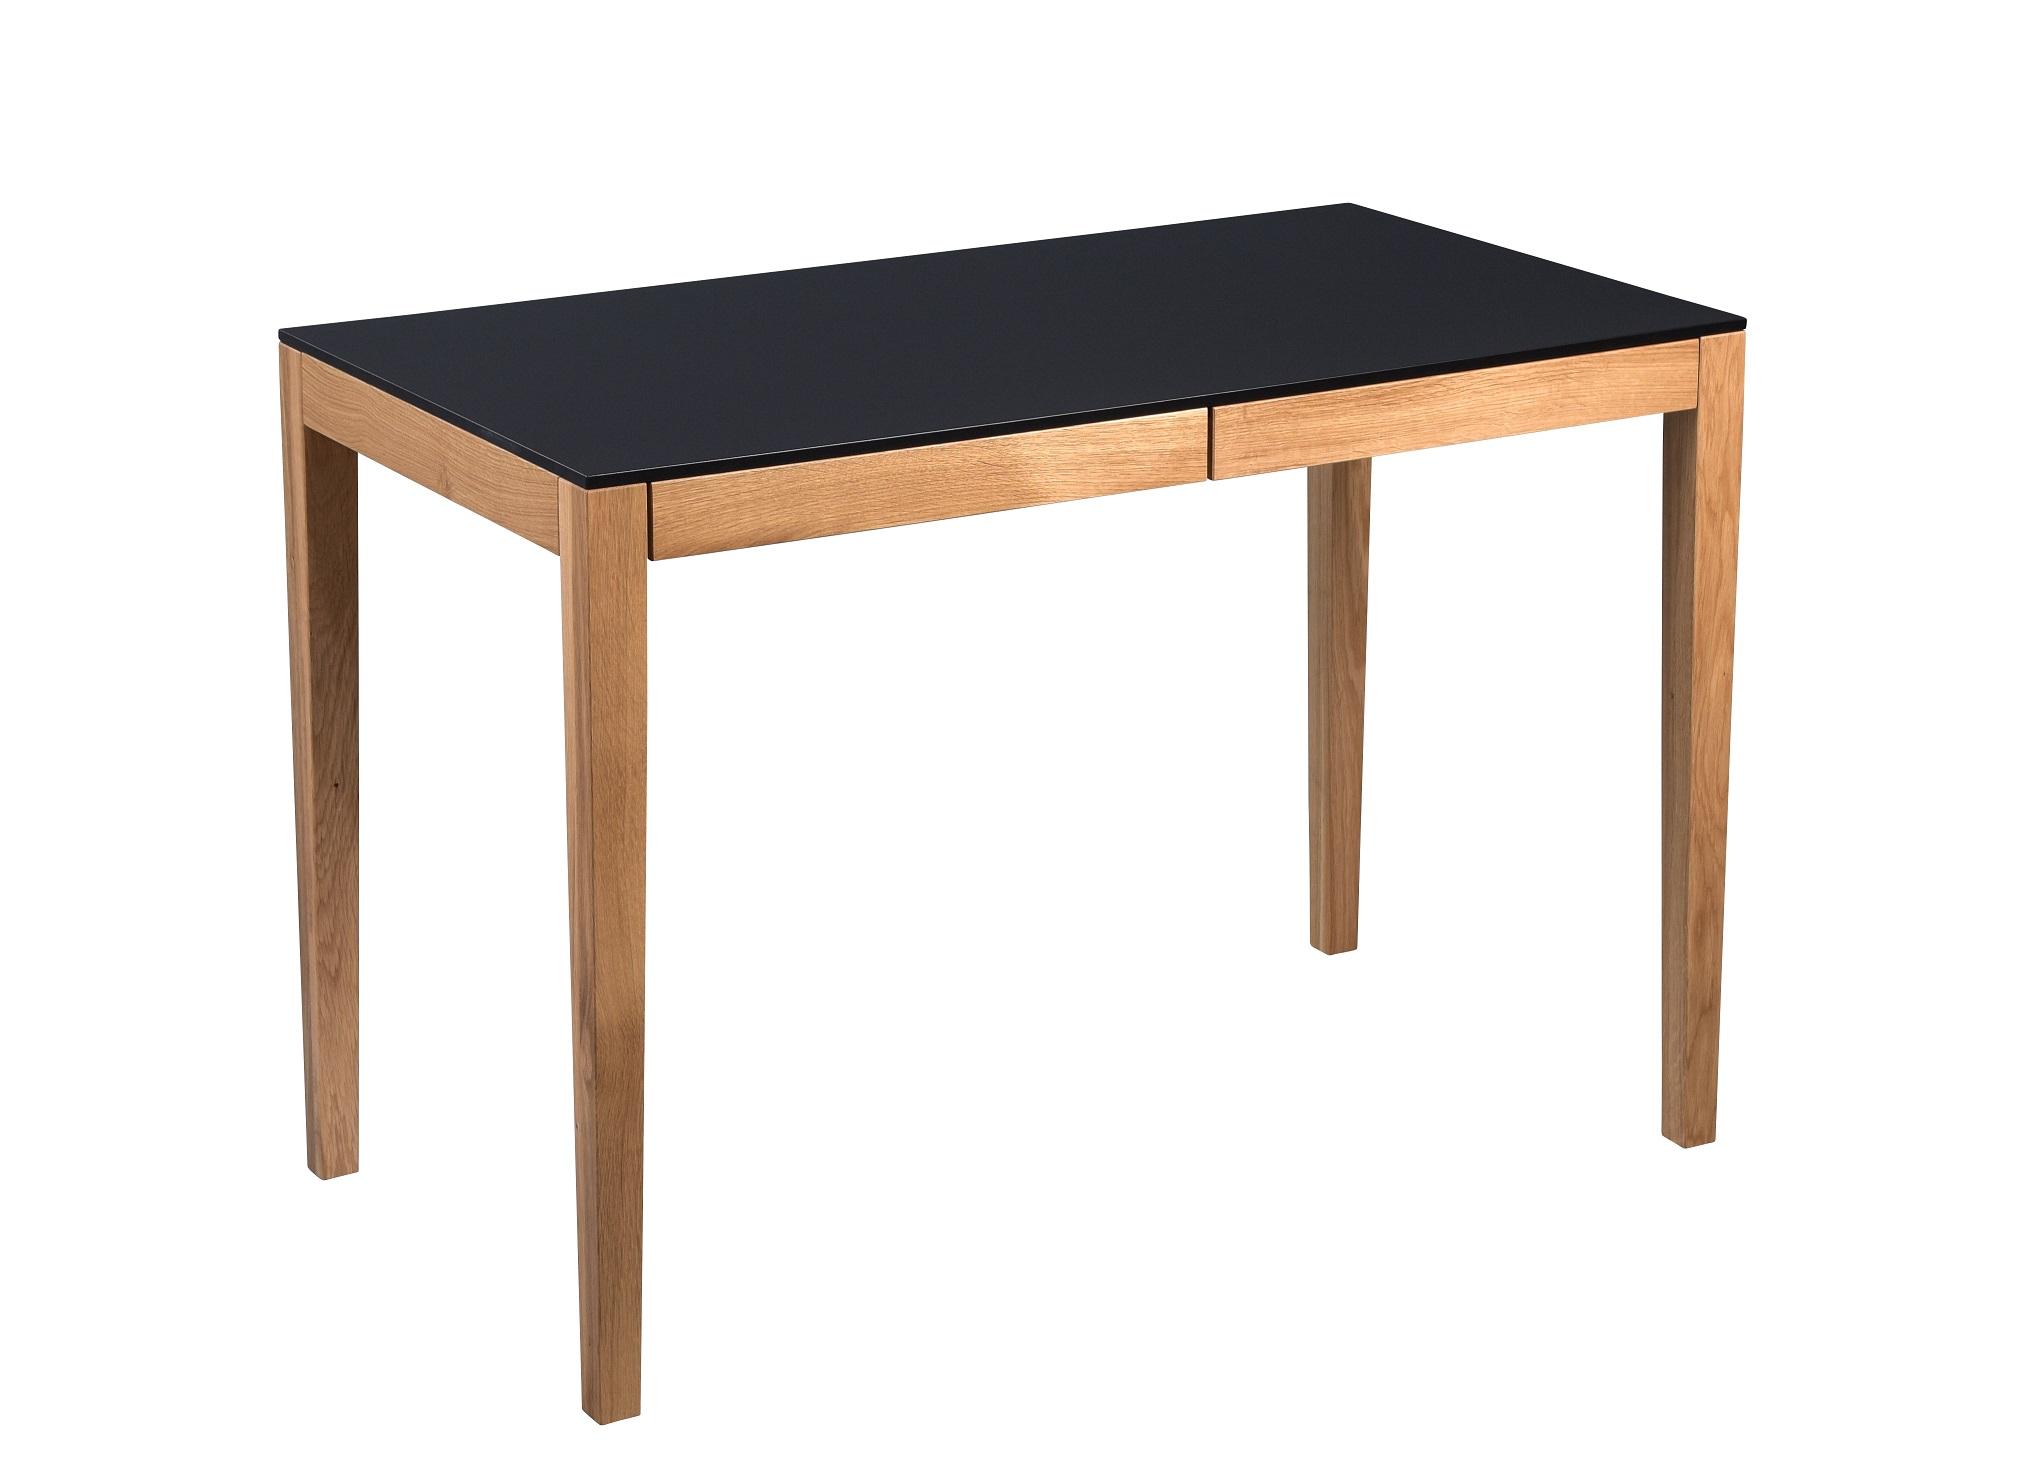 Schreibtisch aus Wildeiche ca. 110x75x60cm - MODERN, Holz/Holzwerkstoff (110/75/60cm) - Modern Living